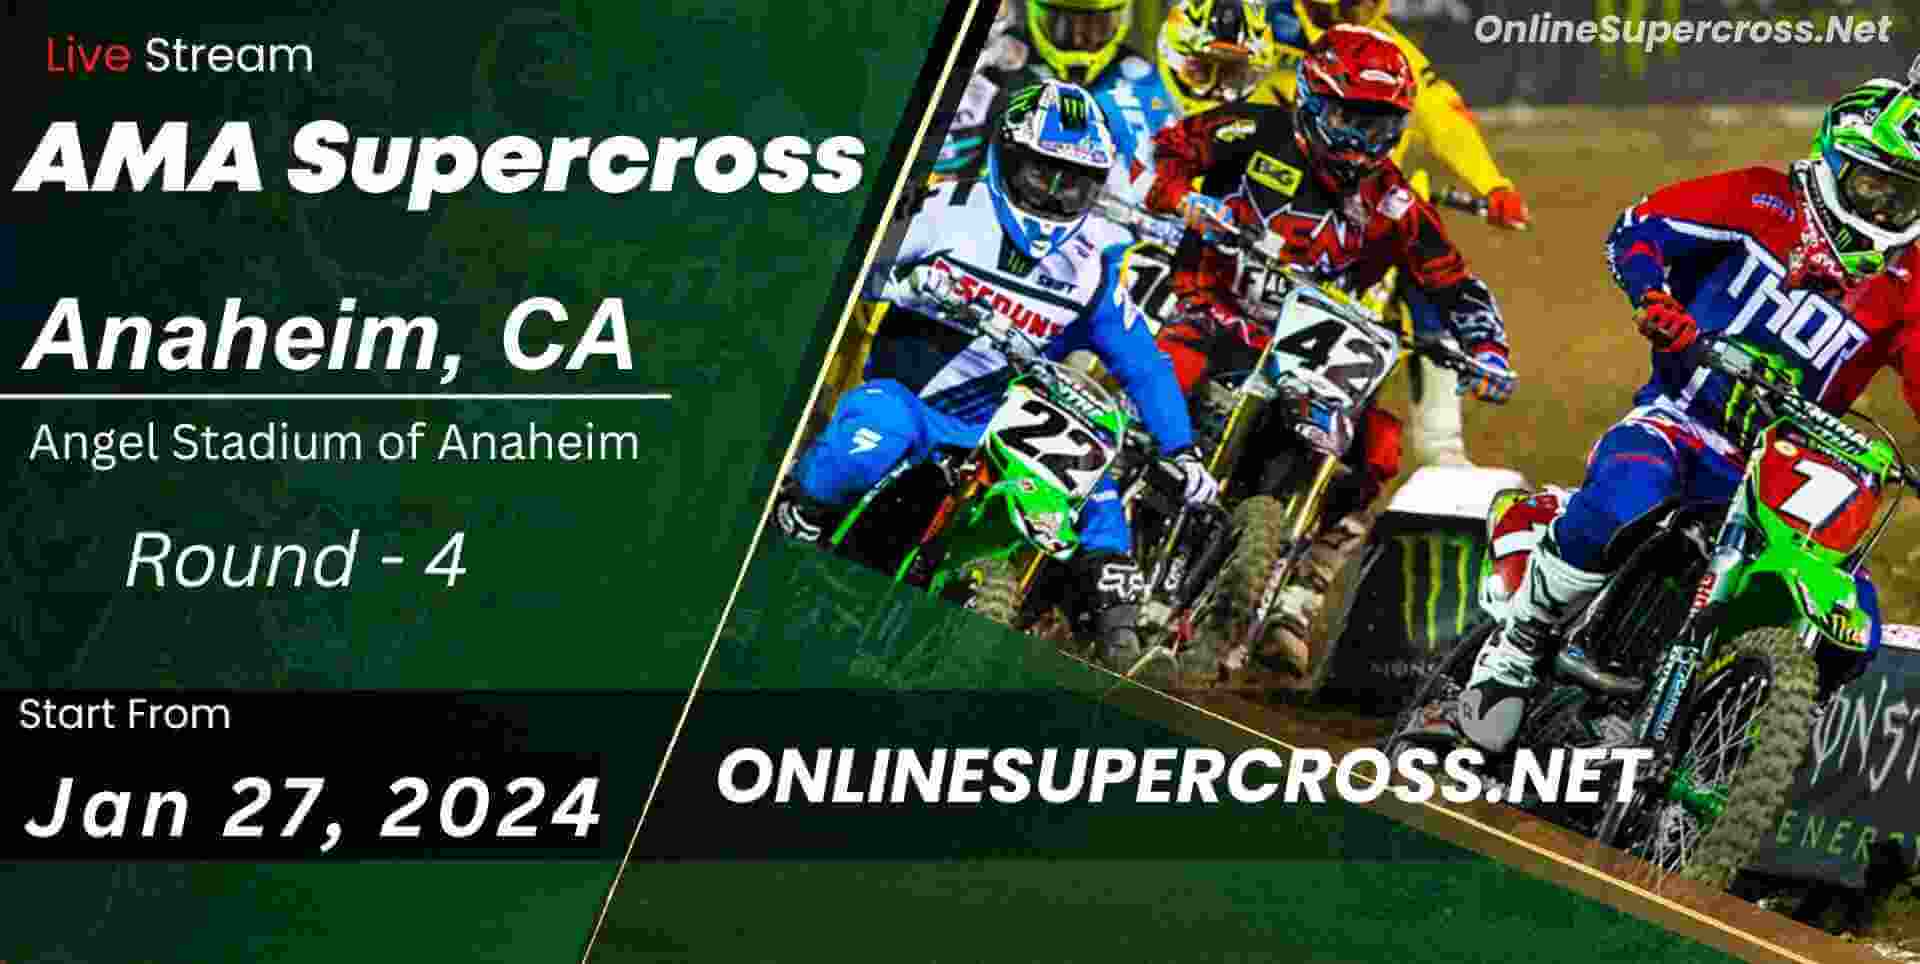 supercross-anaheim-3-live-online